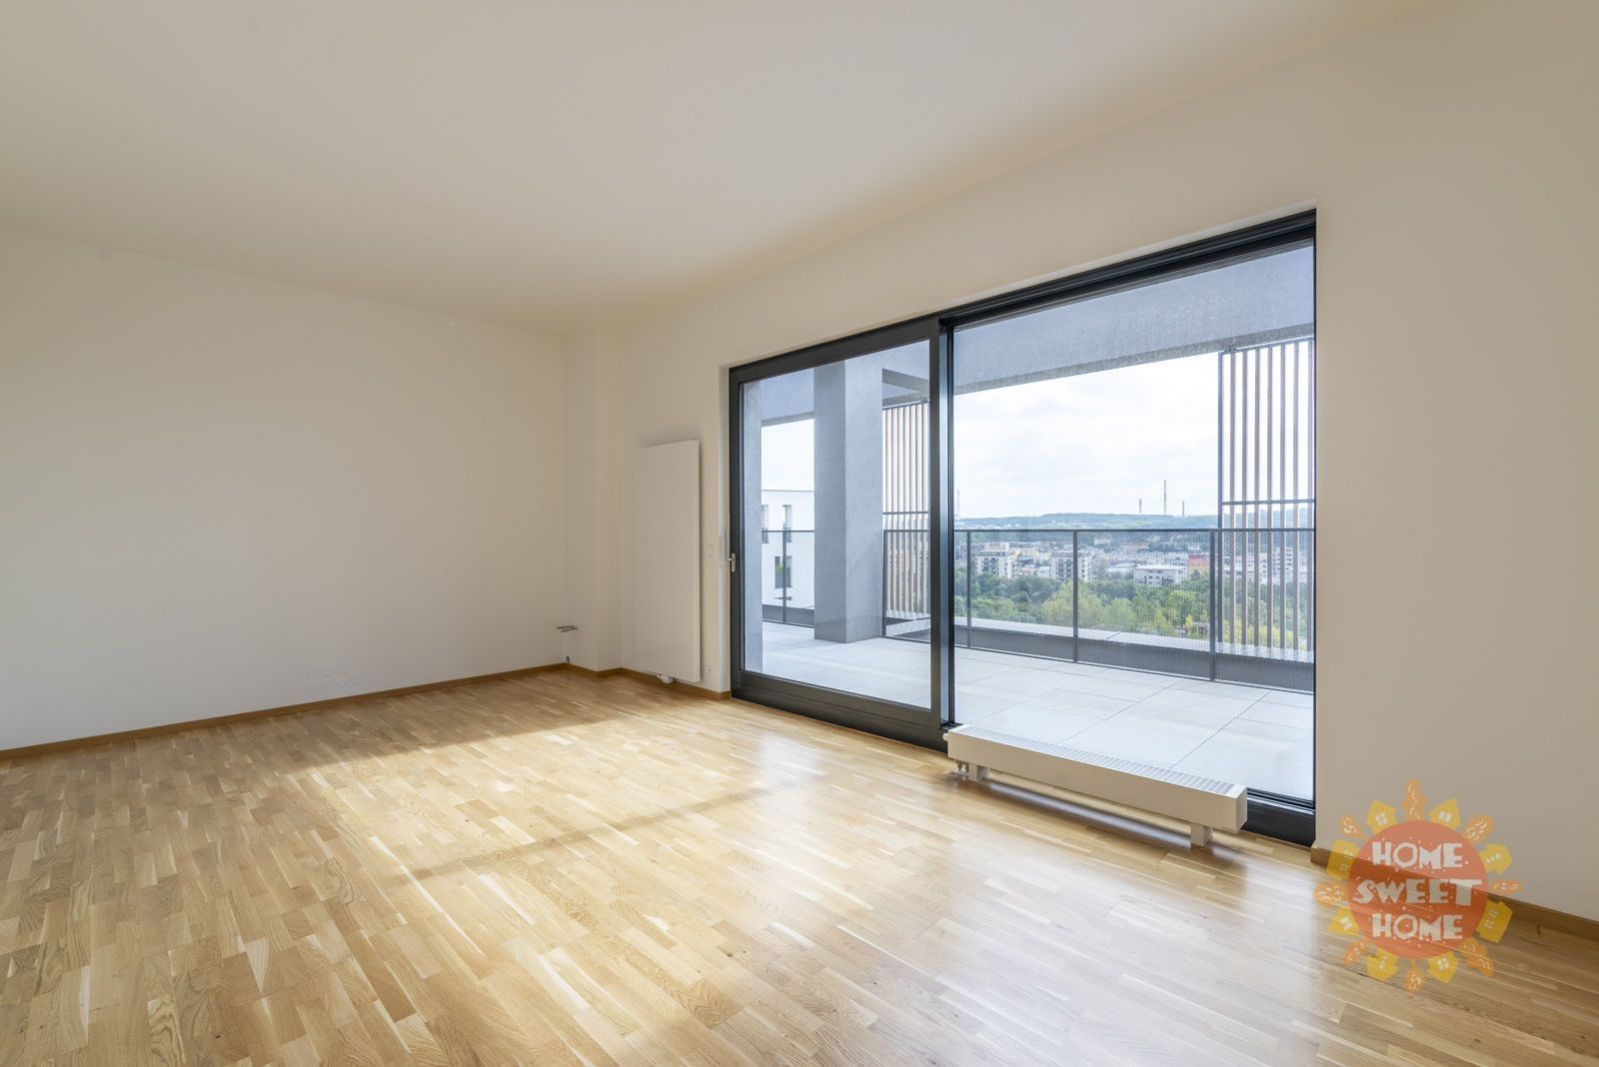 Prodej bytu 2+kk o velikosti 72 m2, terasa s výhledem (50 m2), garážové stání, Praha 9 - Vysočany, obrázek č. 3